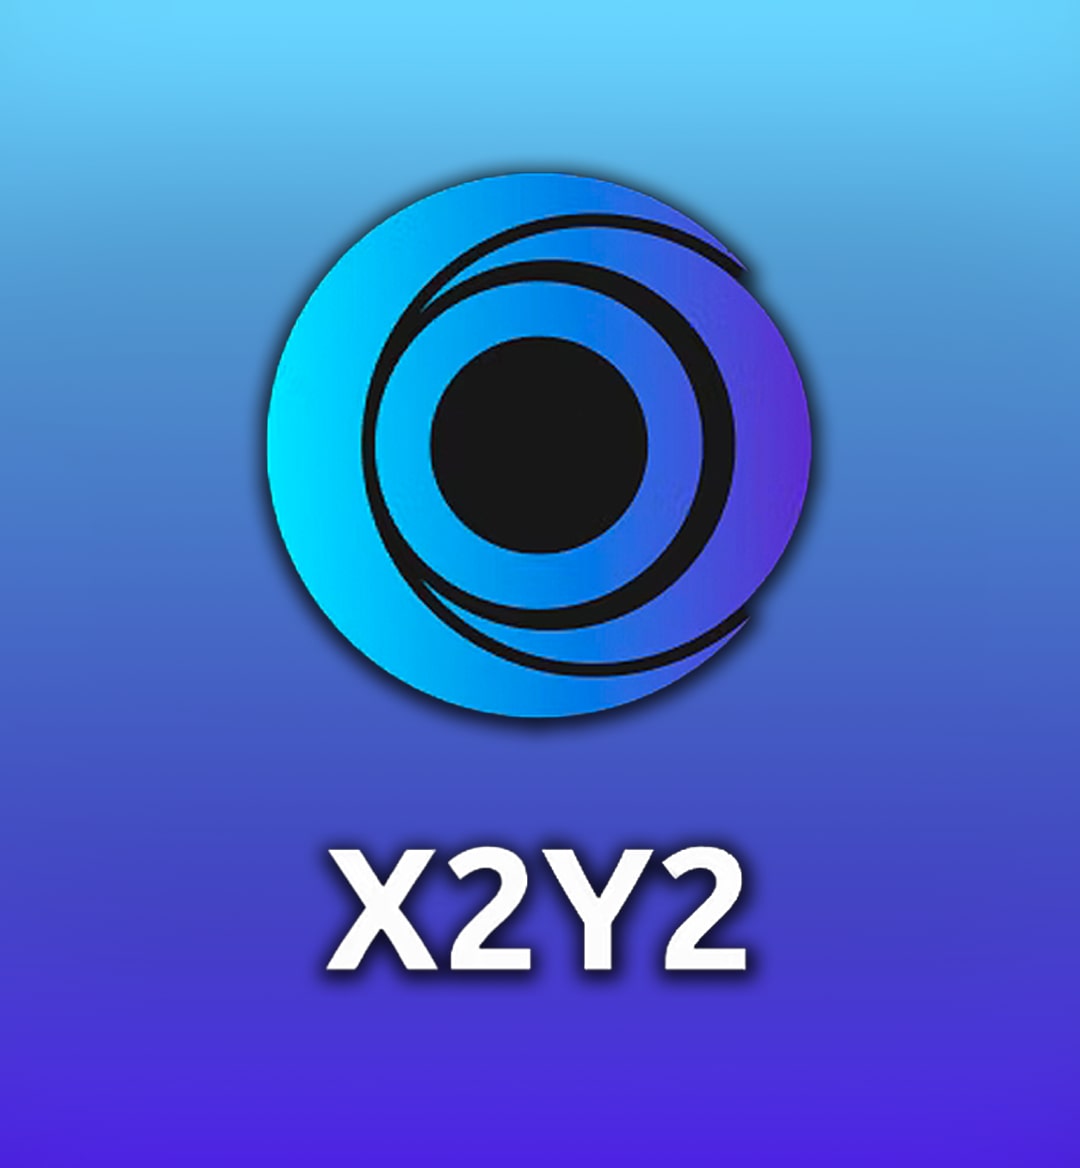 X2Y2 là gì?